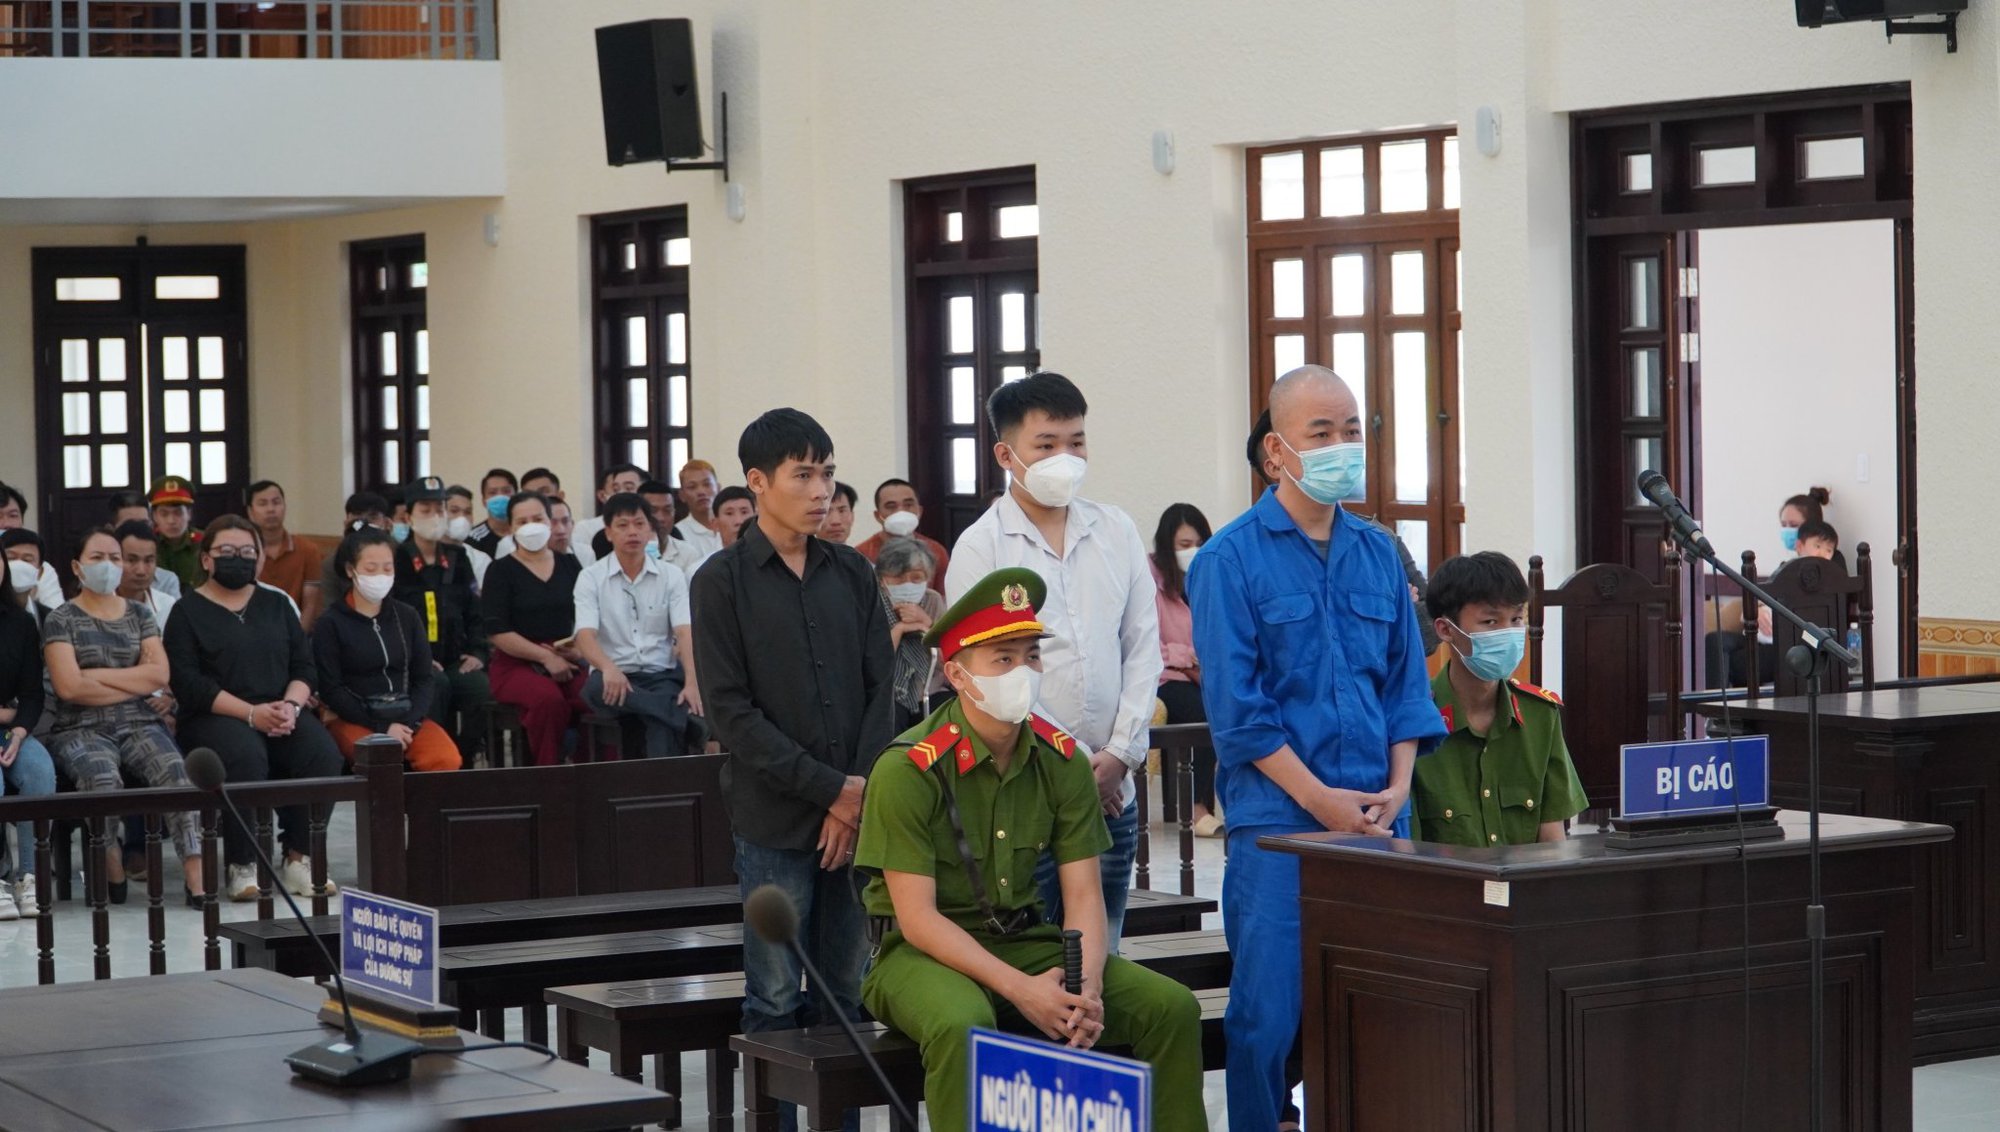 Tài xế Phạm Văn Nam lái xe Mercedes gây chết người ở Phan Thiết bị tuyên án  - Ảnh 1.